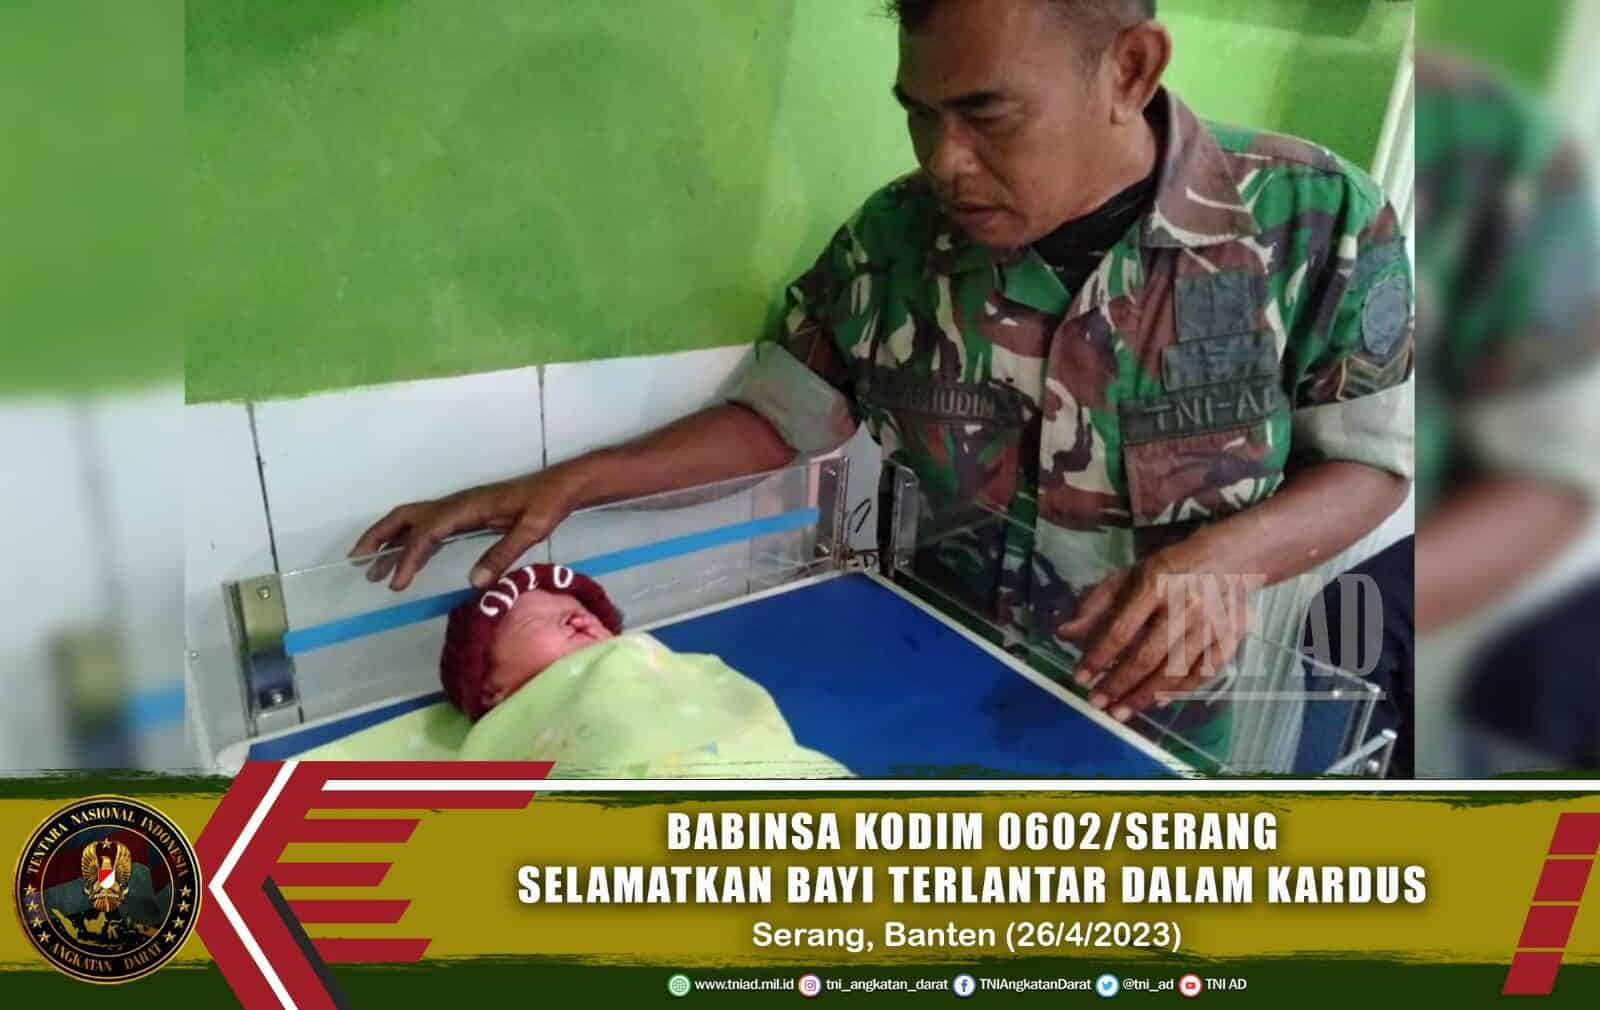 Babinsa Kodim 0602/Serang Selamatkan Bayi Terlantar Dalam Kardus